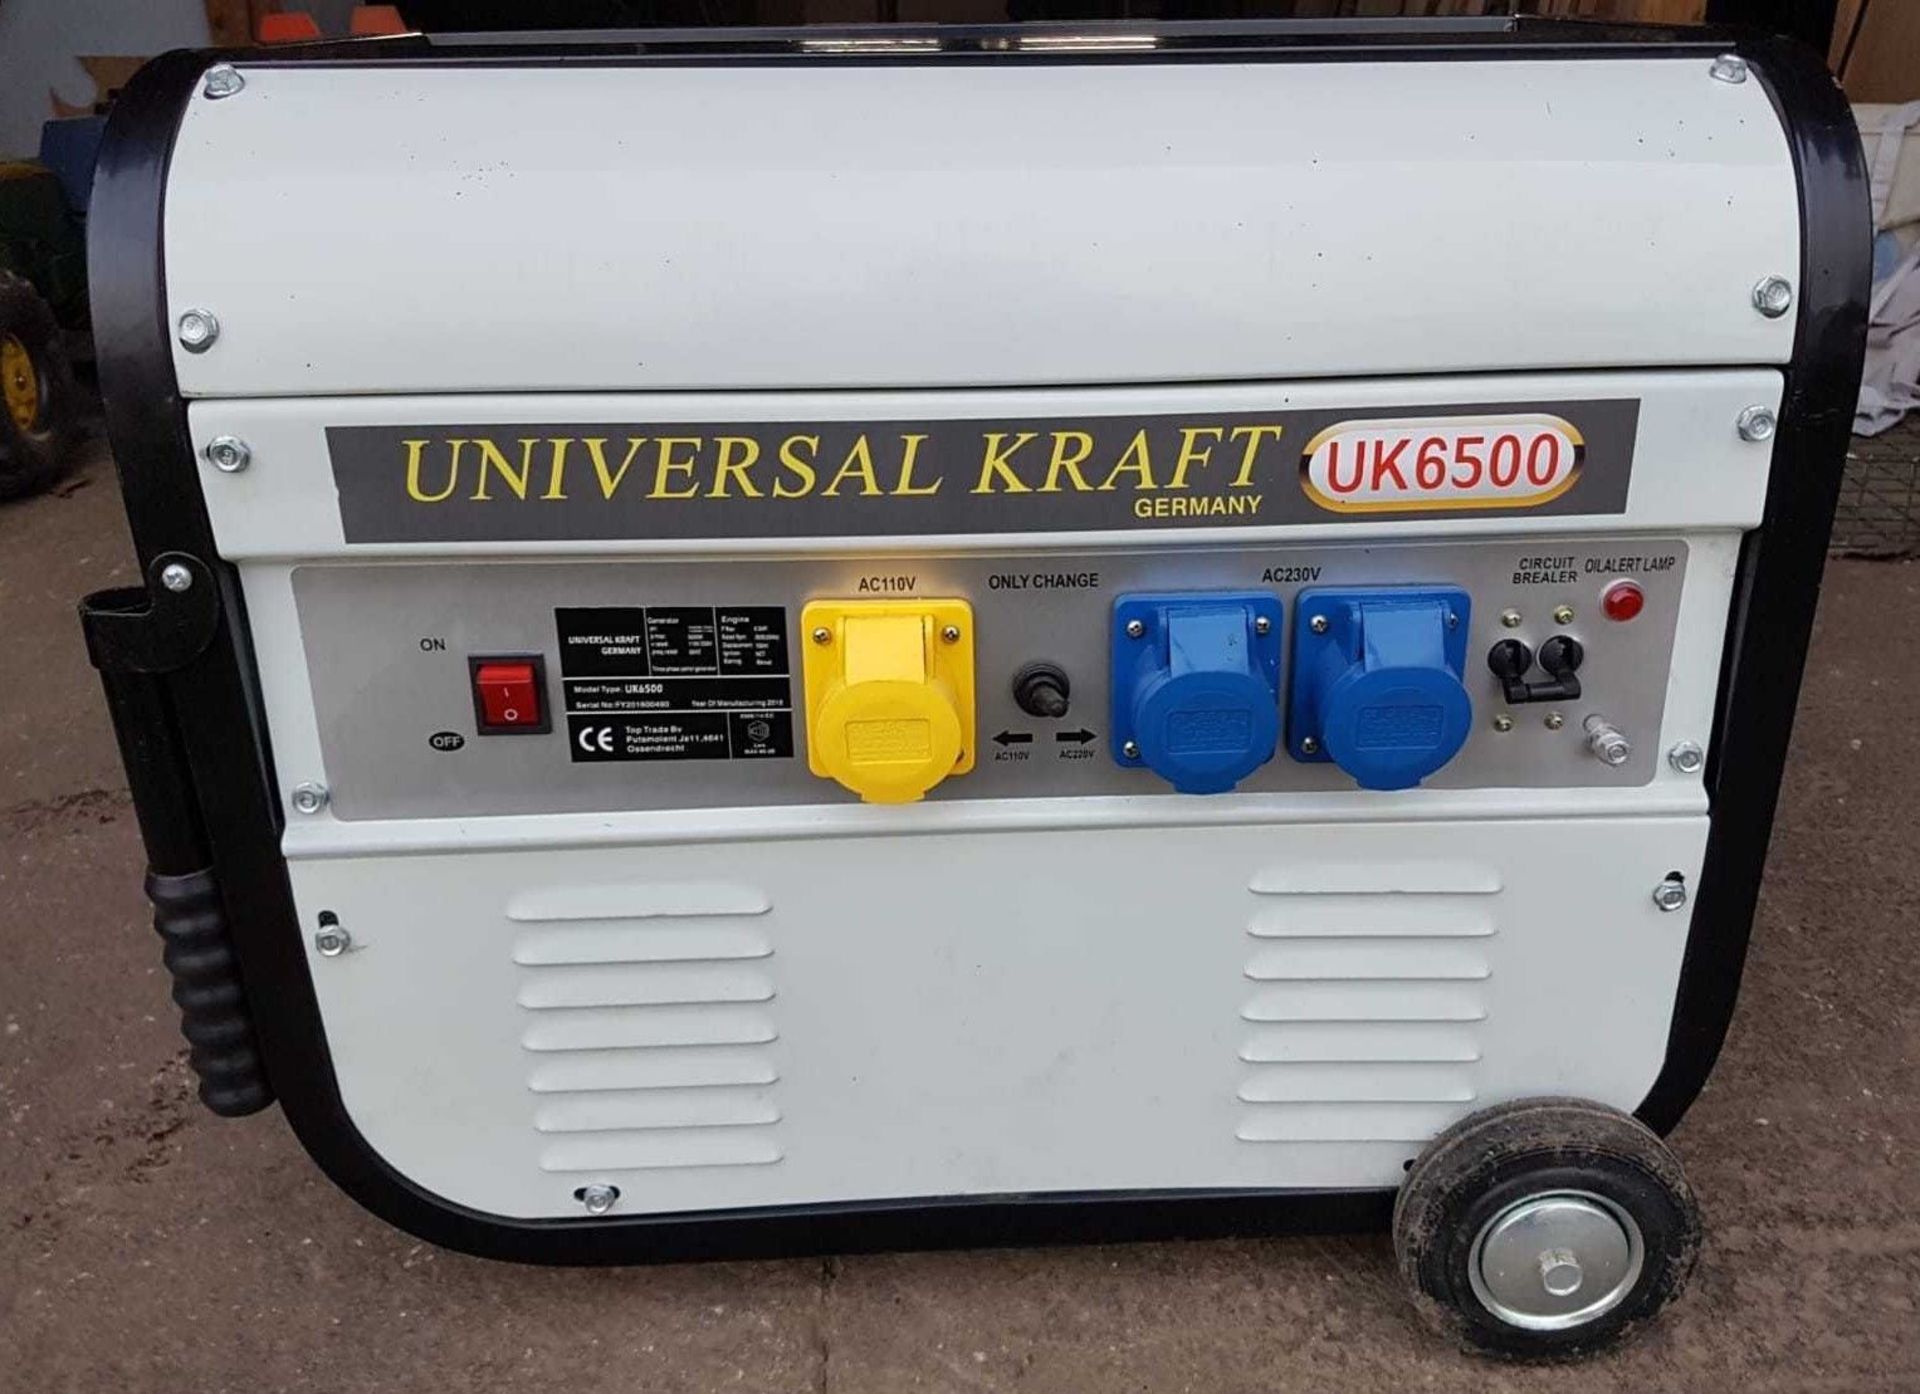 V Brand New 220v UK6500 Petrol Generator - Universal Kraft Germany - On Frame On Wheels - eBay Price